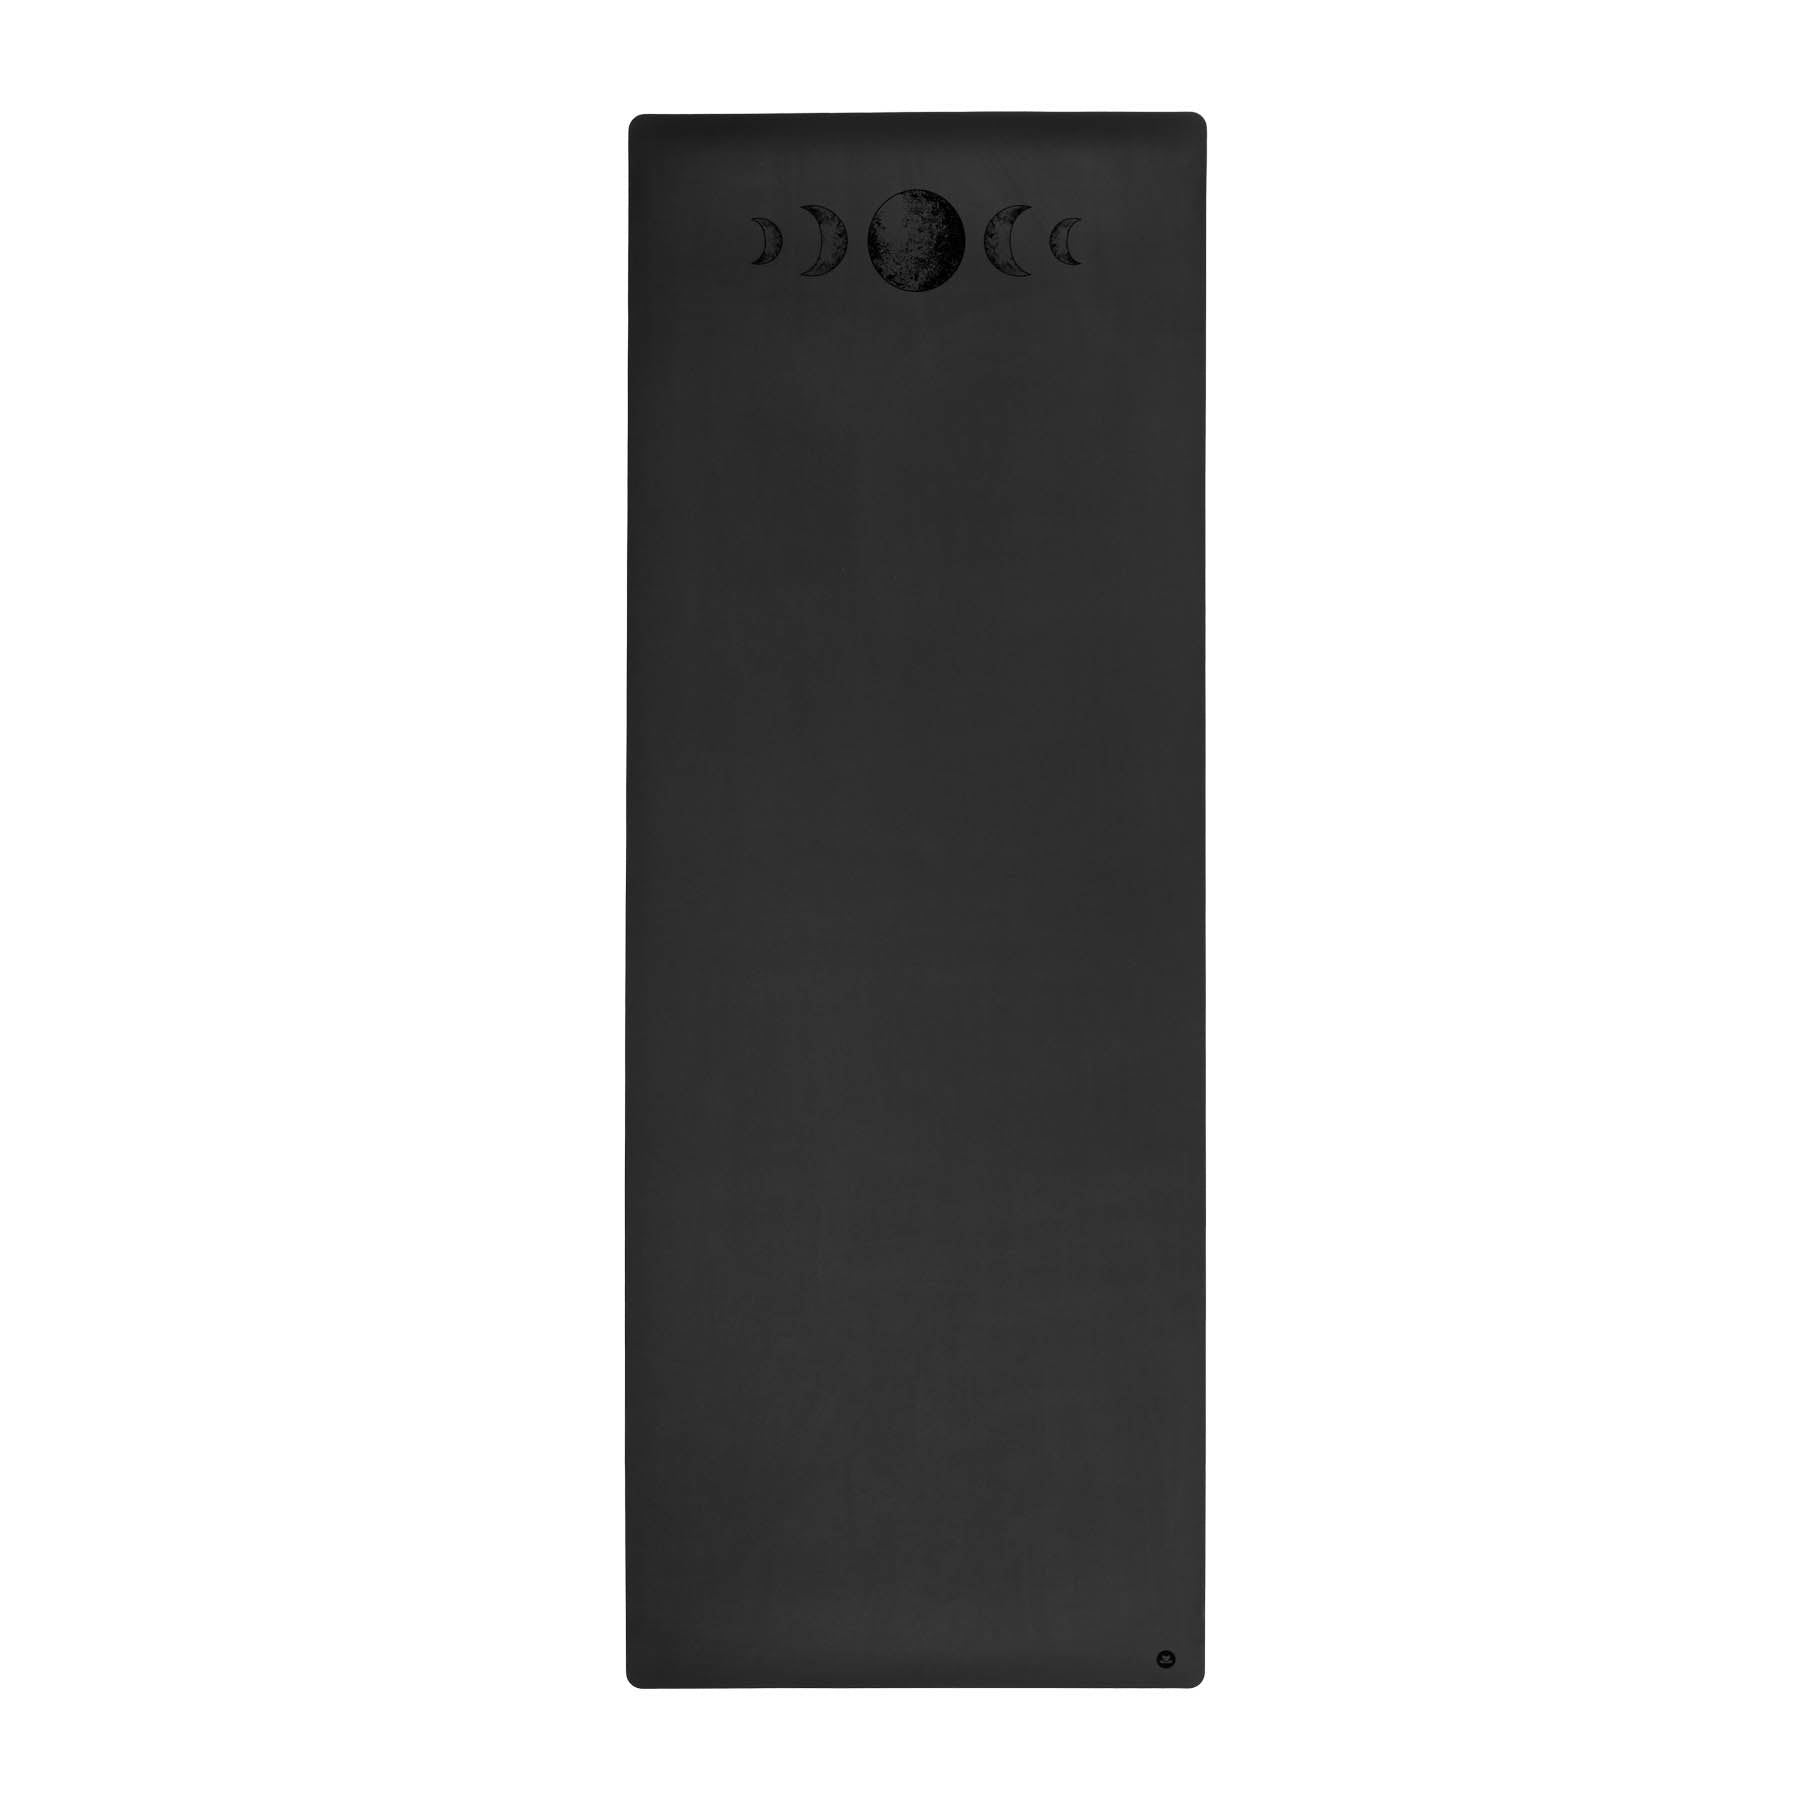 Yogammatte SuperGrip sehr rutschfest aus nachhaltigem Naturkautschuck in der Farbe schwarz